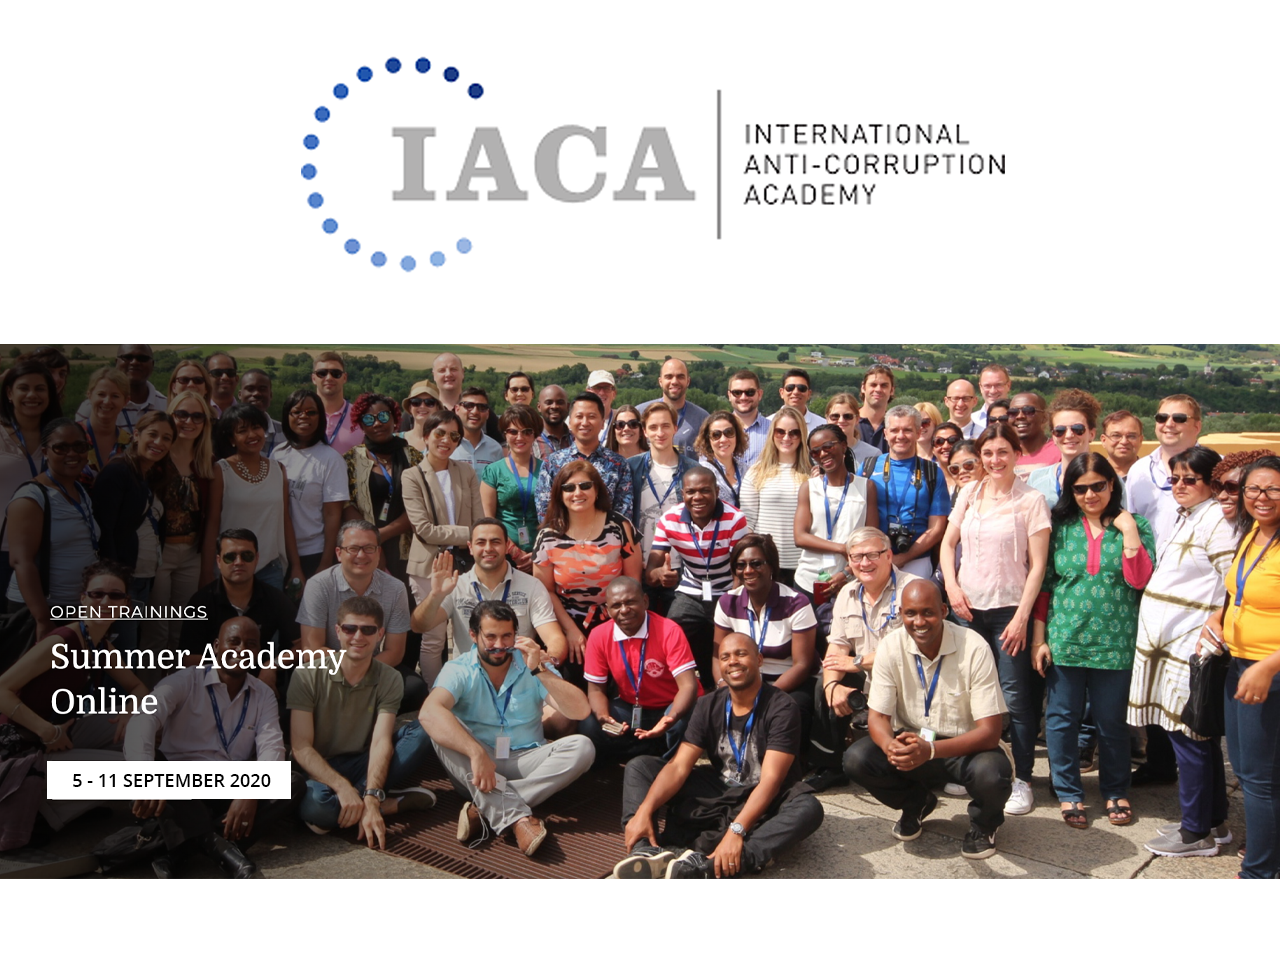 IACA Summer Academy Online 2020